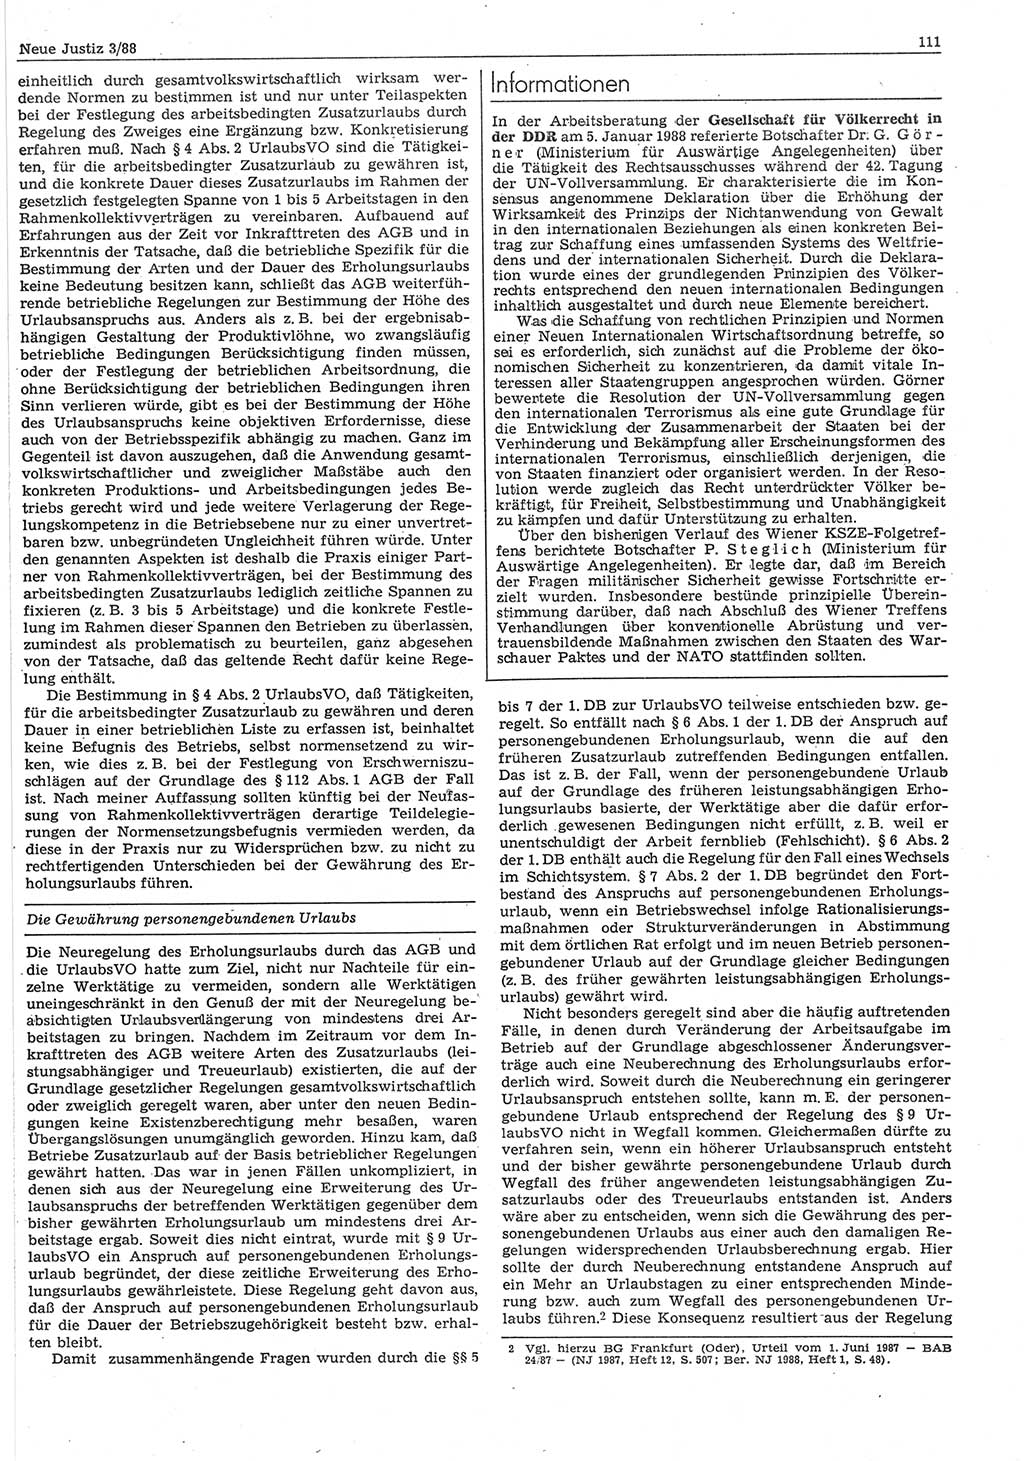 Neue Justiz (NJ), Zeitschrift für sozialistisches Recht und Gesetzlichkeit [Deutsche Demokratische Republik (DDR)], 42. Jahrgang 1988, Seite 111 (NJ DDR 1988, S. 111)